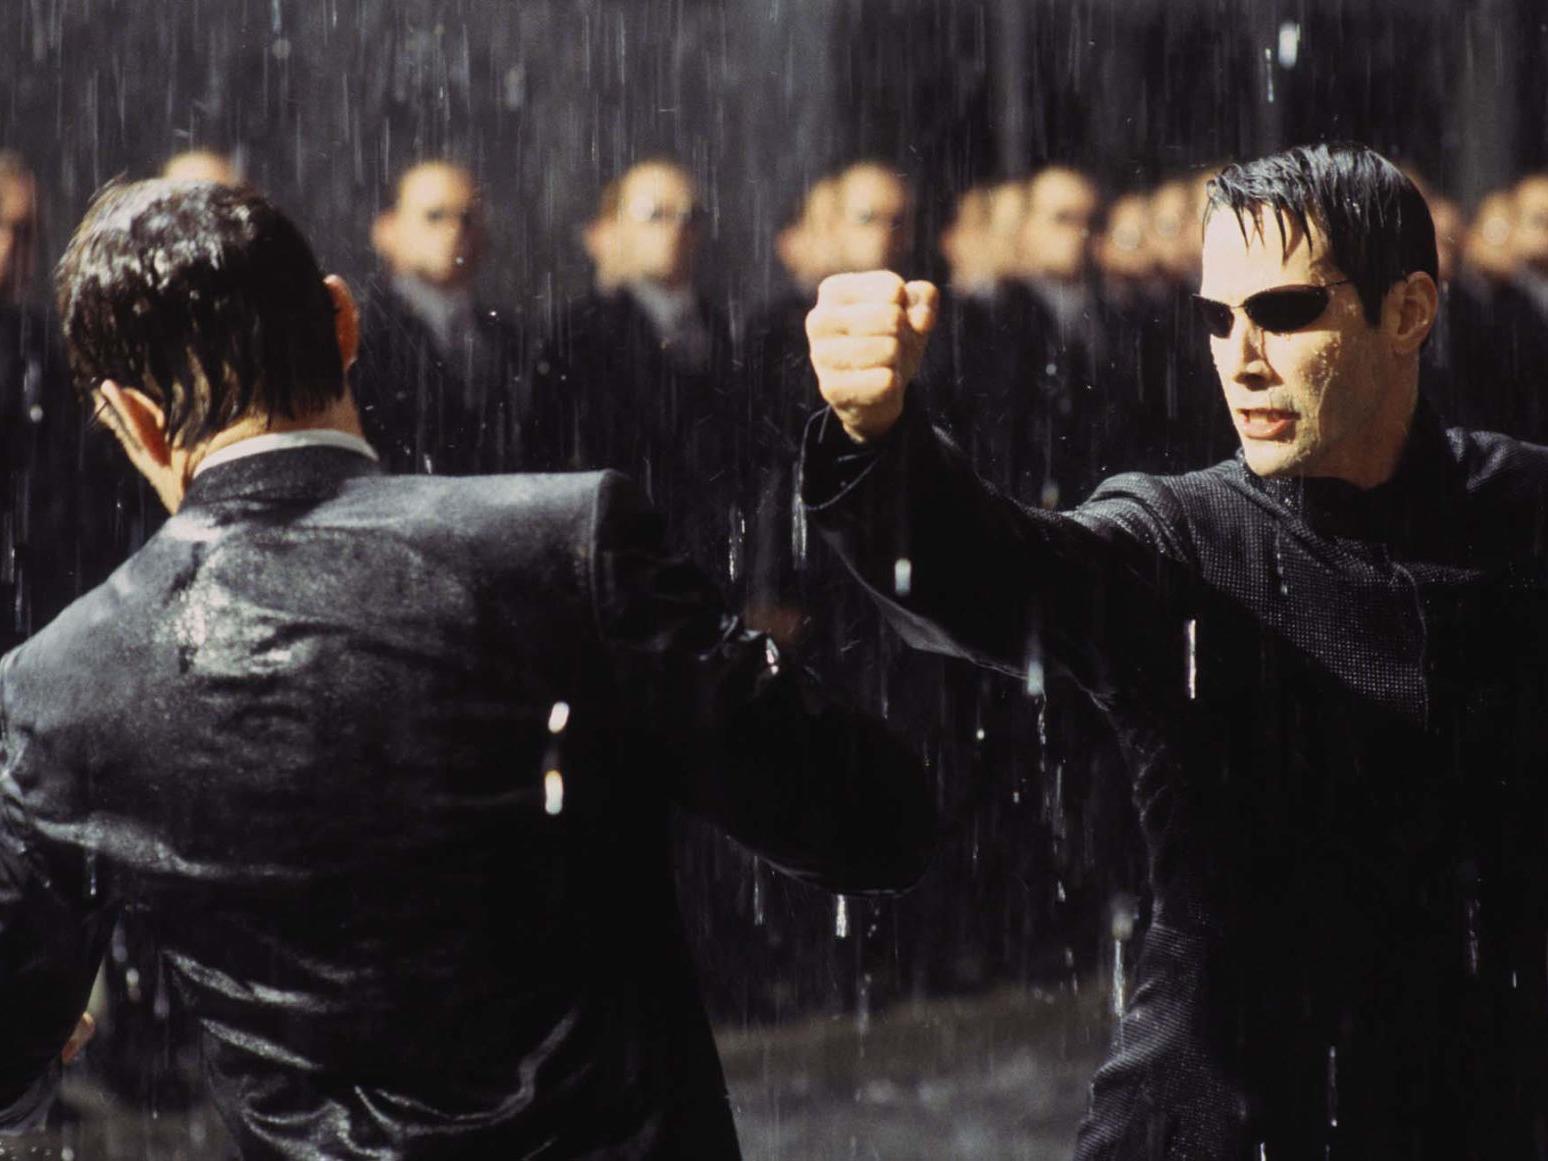 The Matrix saga